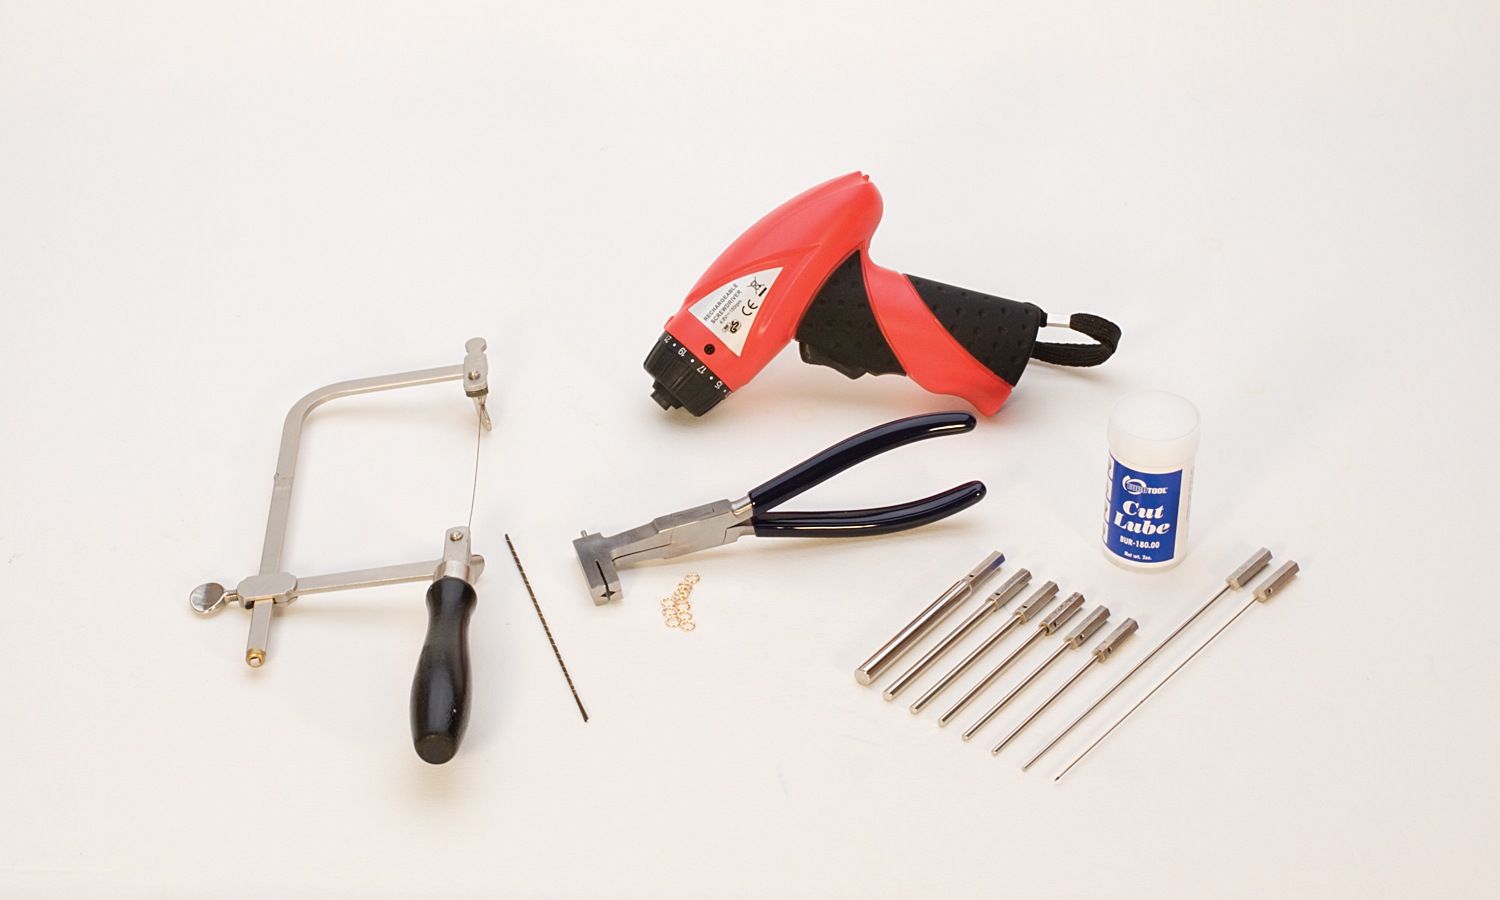 Pliers & Cutting Kits